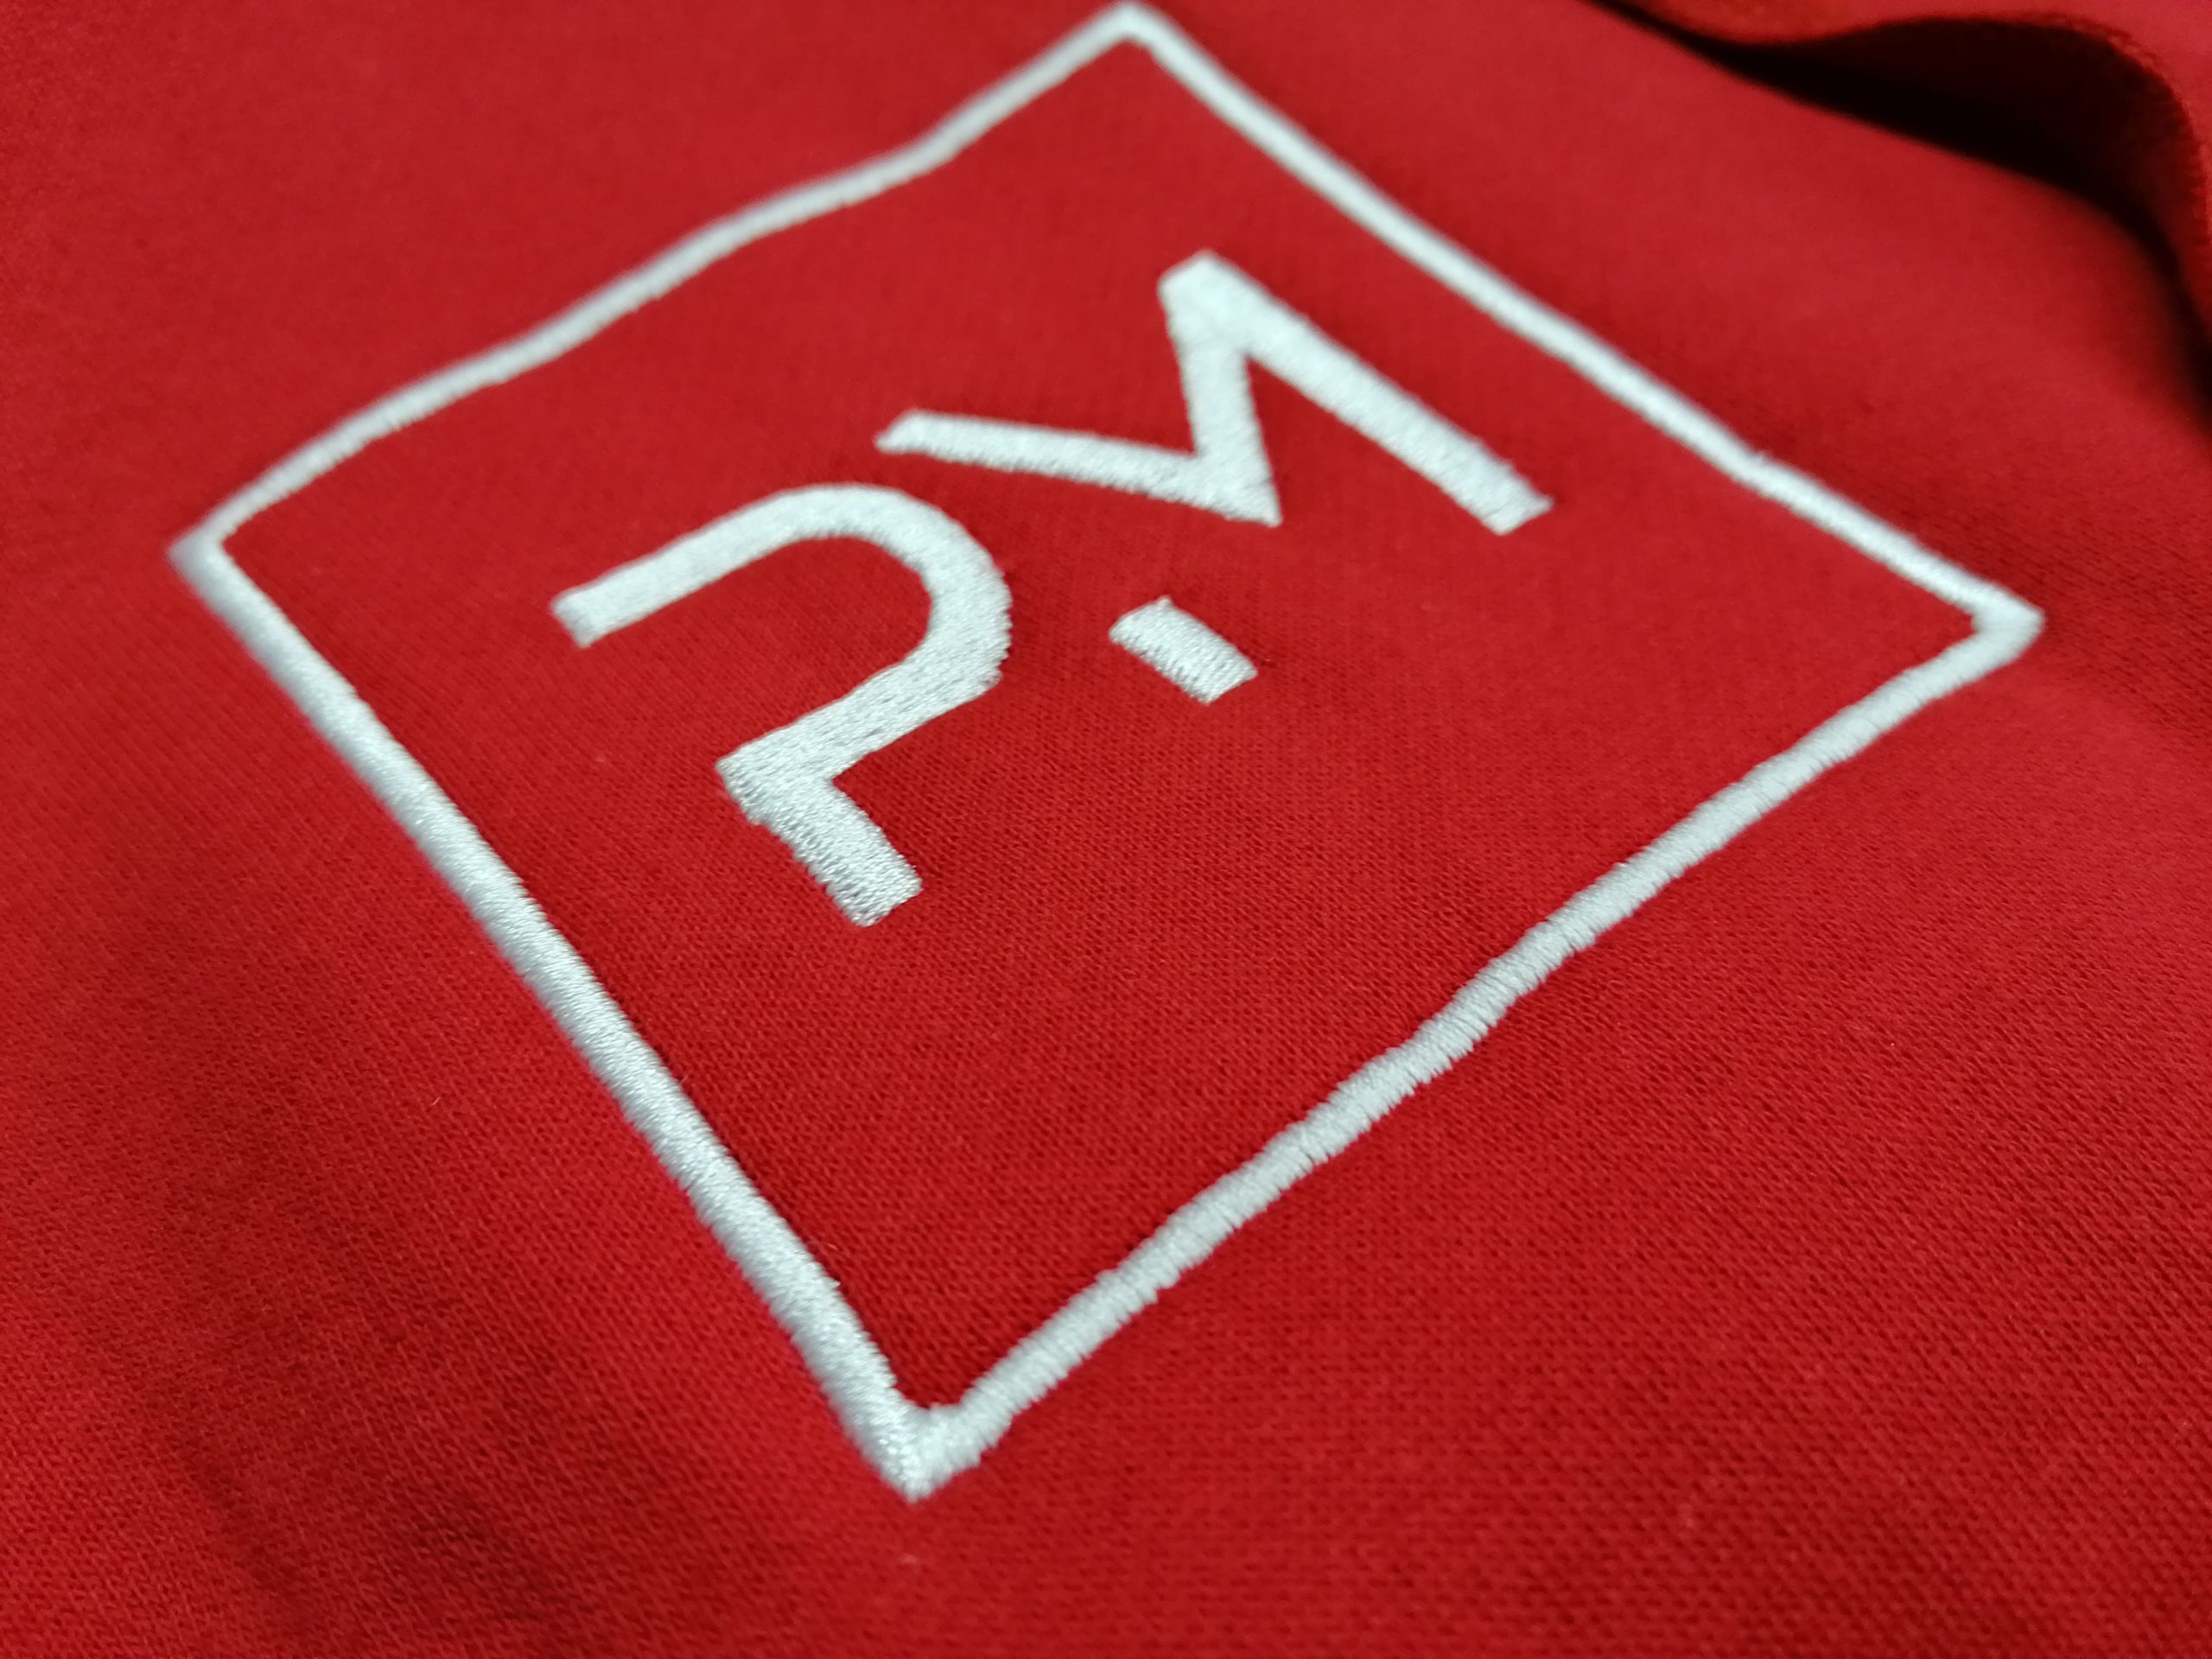 вышивка логотипа на красной ткани белыми нитками